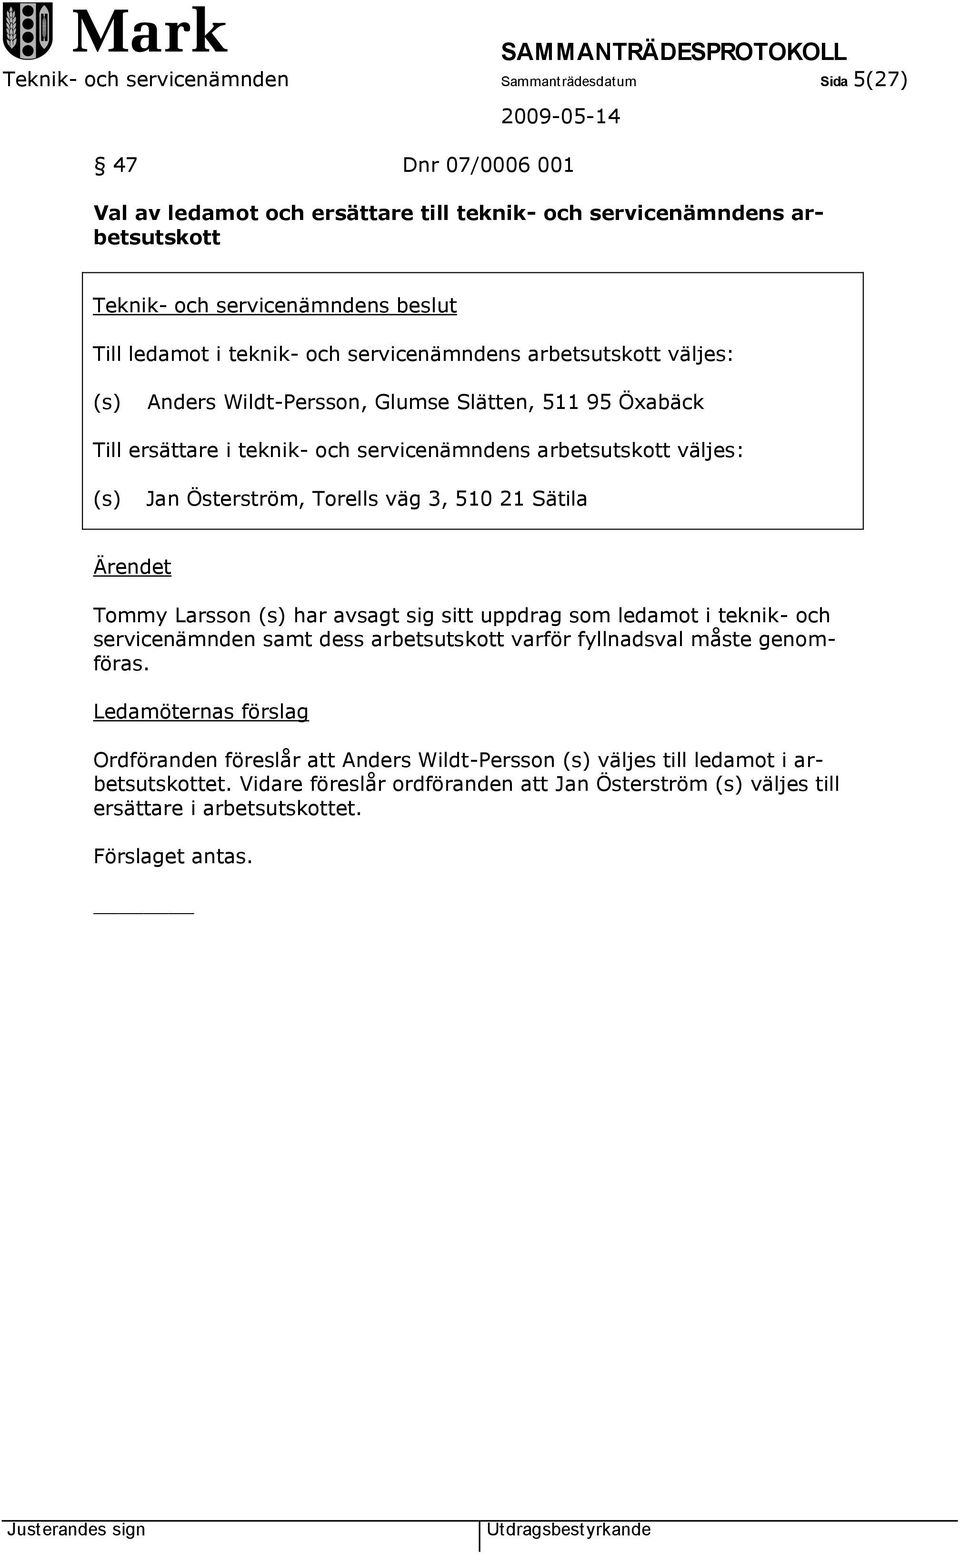 väg 3, 510 21 Sätila Ärendet Tommy Larsson (s) har avsagt sig sitt uppdrag som ledamot i teknik- och servicenämnden samt dess arbetsutskott varför fyllnadsval måste genomföras.